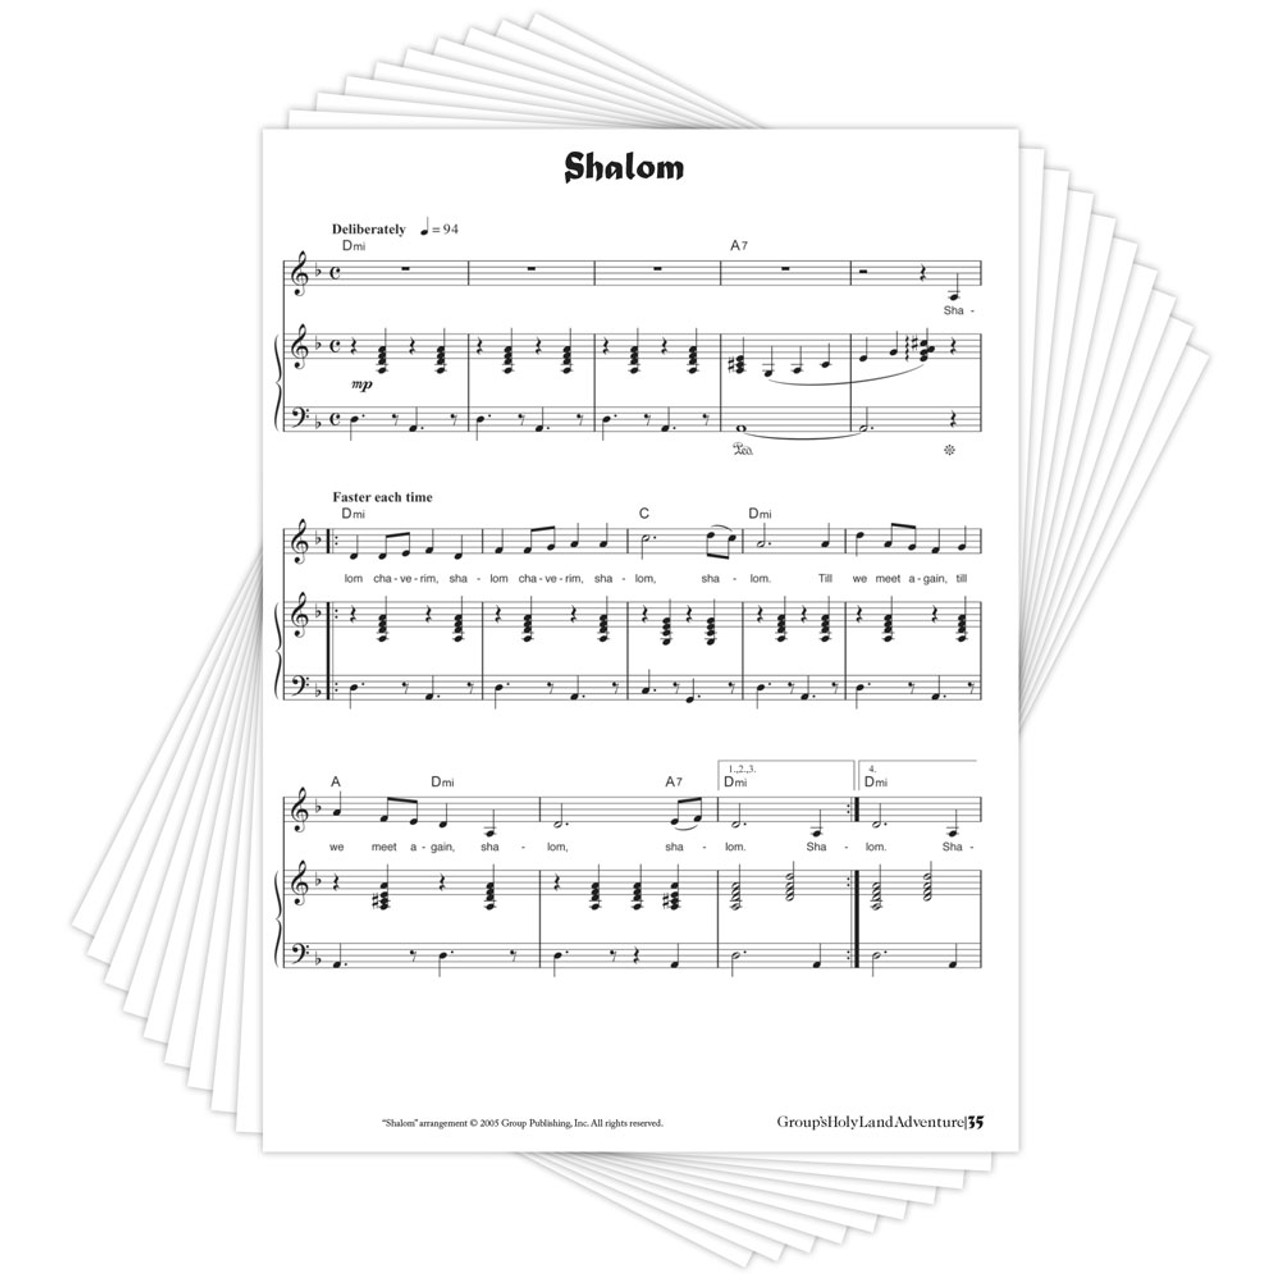 Piano Sheet Music Downloads